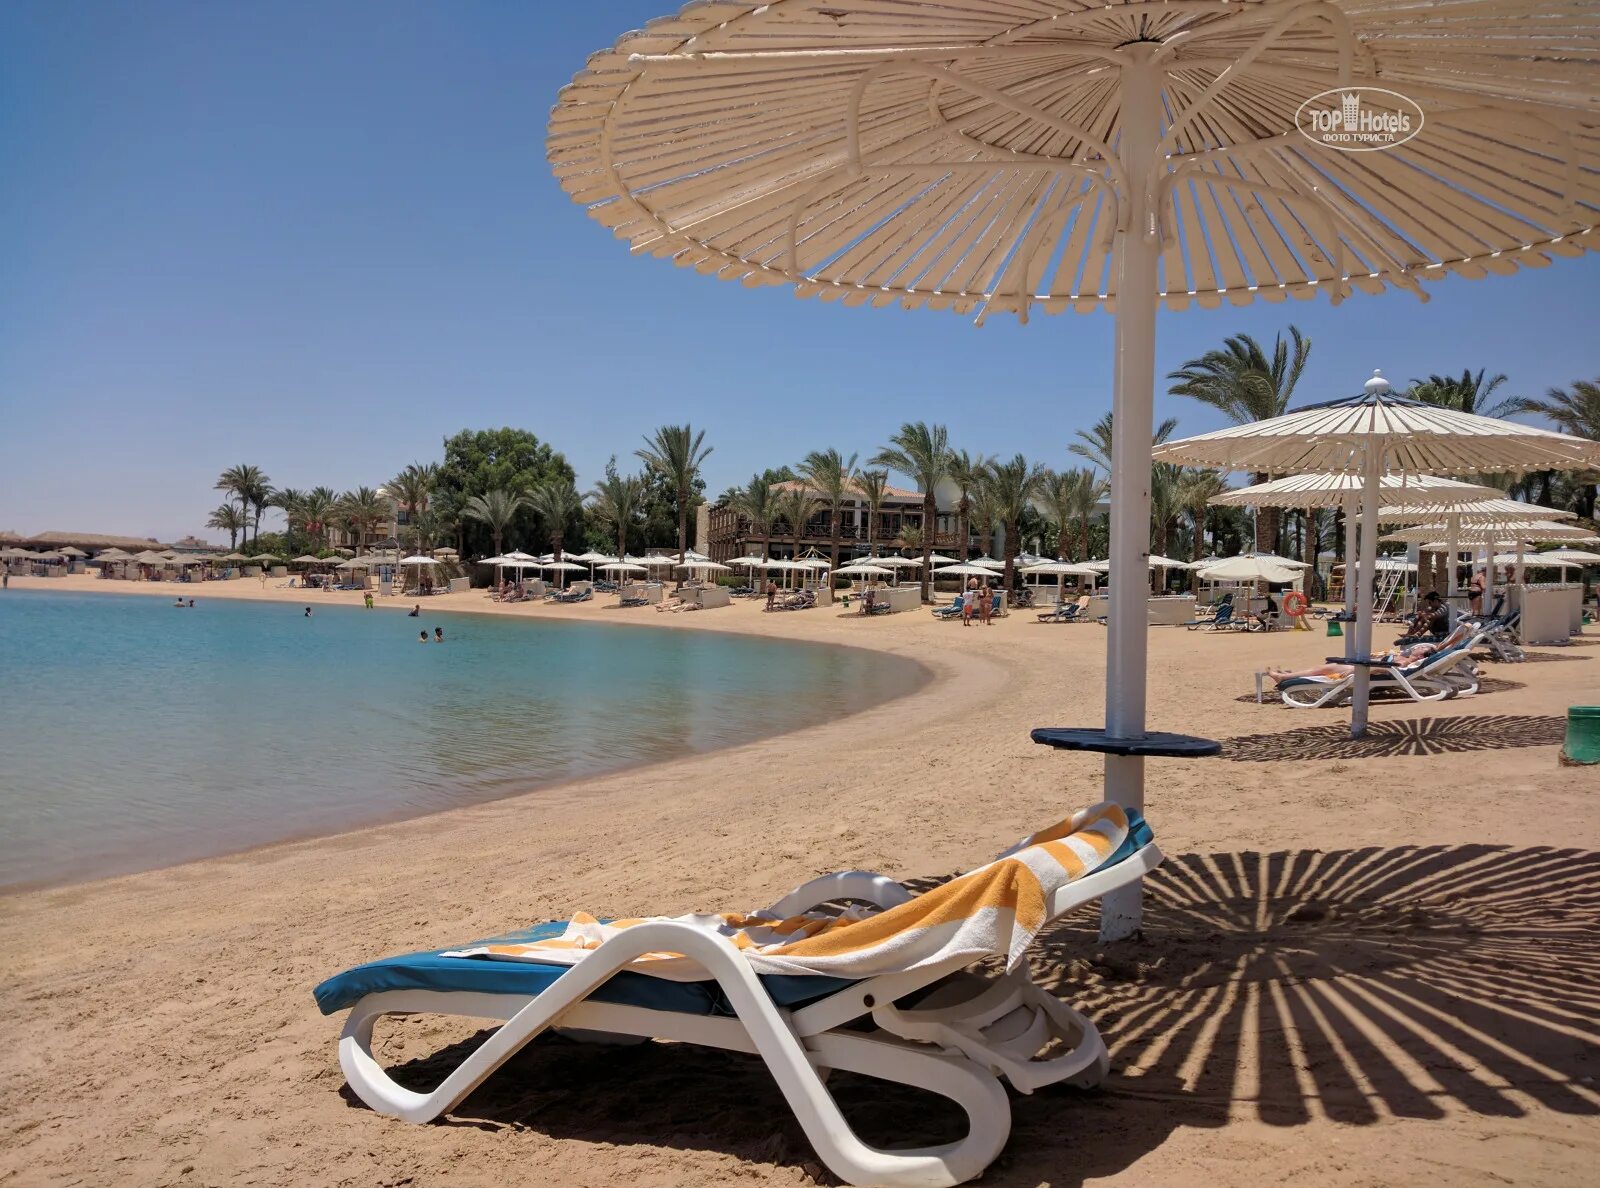 Swiss Inn Resort Hurghada 5. Свисс ИНН Резорт Хургада 5.